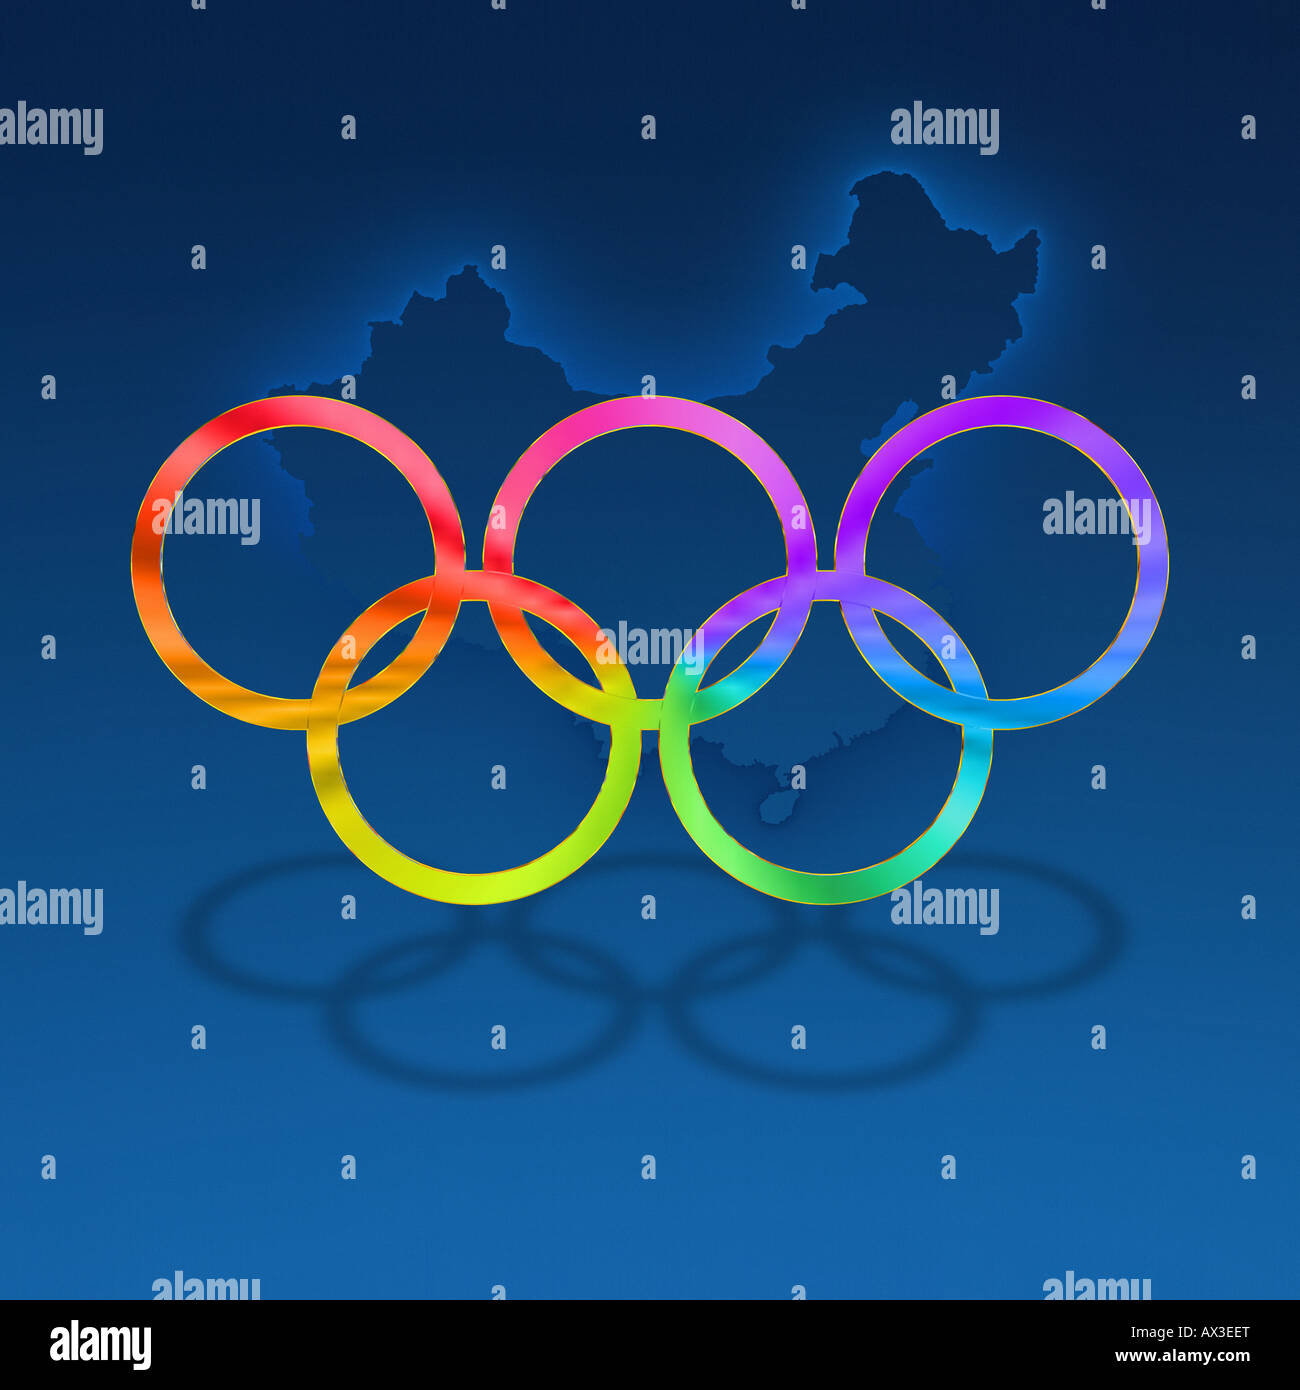 Olympische Ringe in hellen Farben gegen einen schönen blauen abgestuften  Hintergrund, einschließlich subtile Überblick über China Stockfotografie -  Alamy